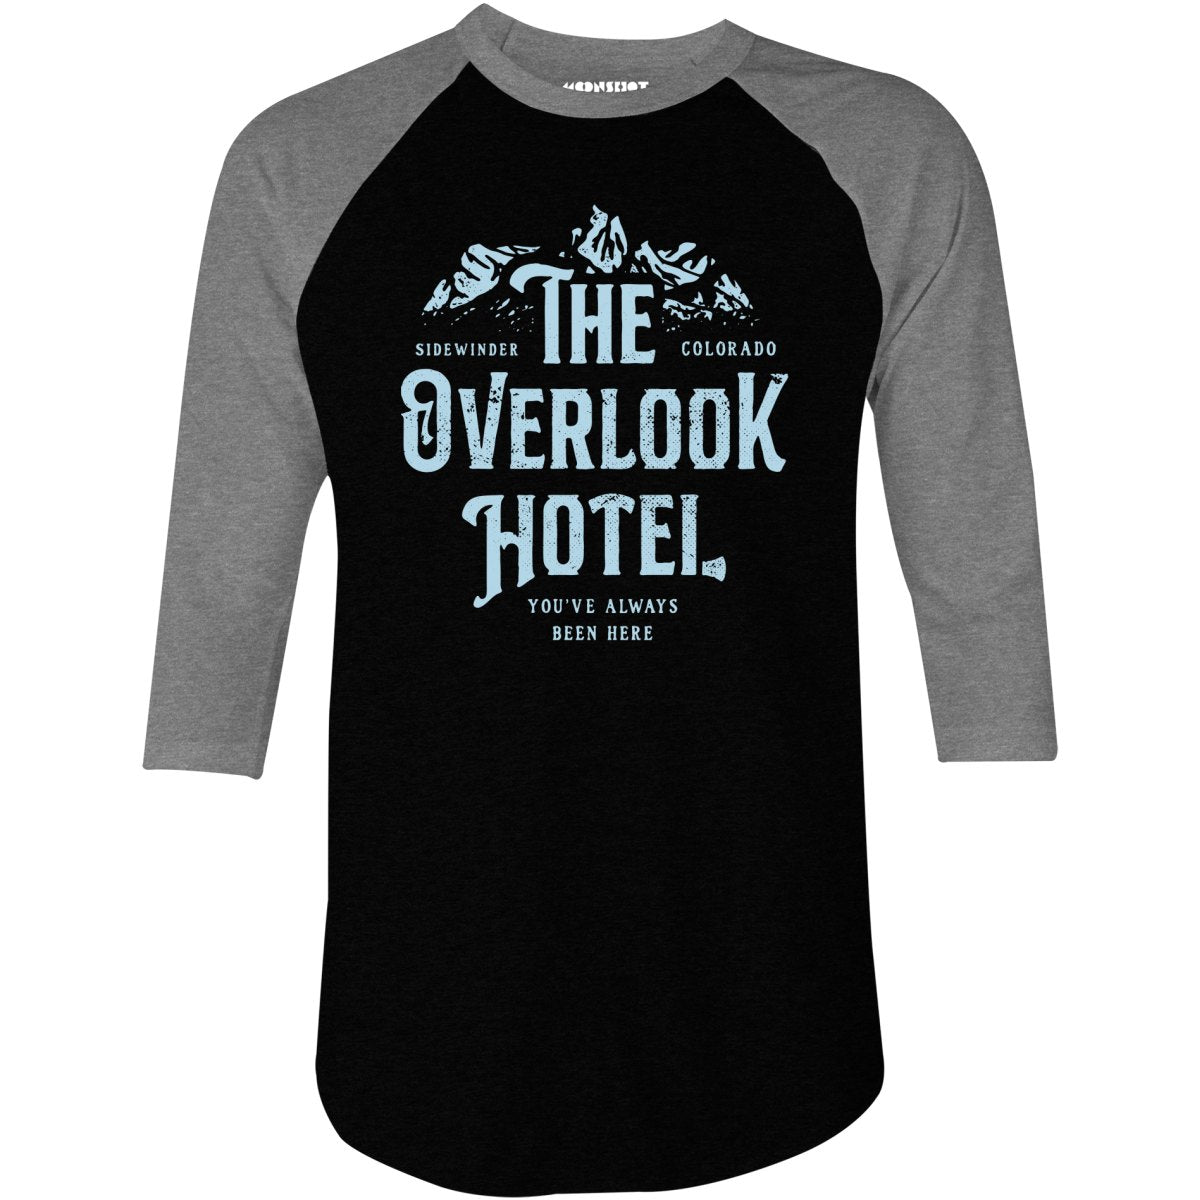 The Overlook Hotel - 3/4 Sleeve Raglan T-Shirt